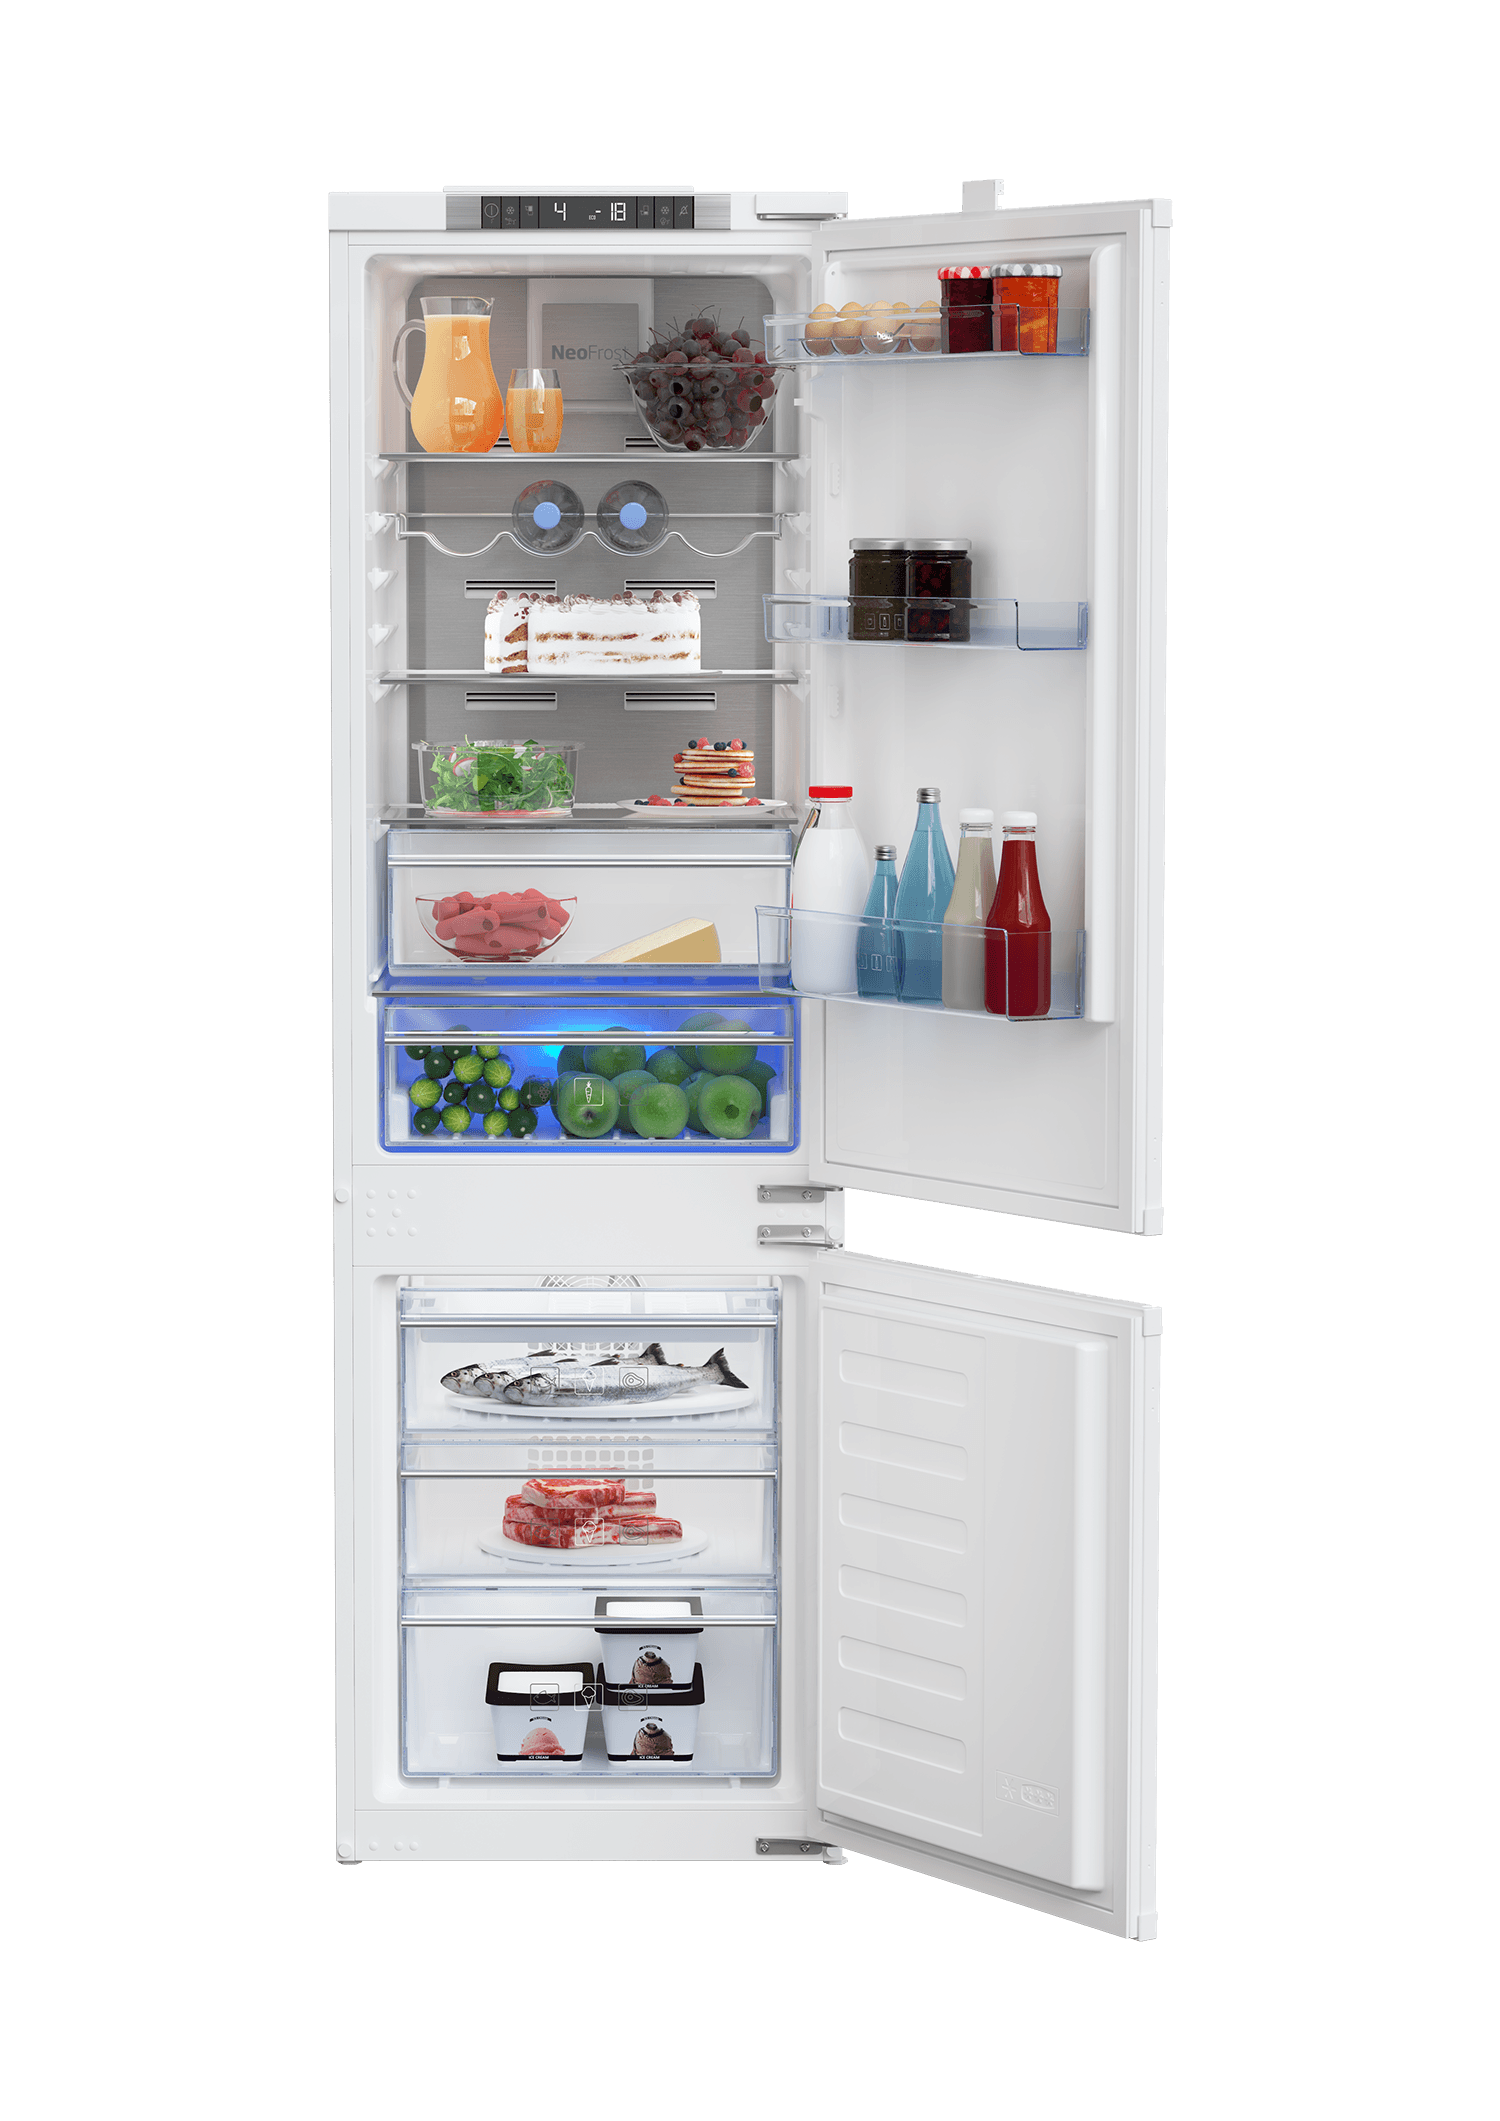 Slike Beko BCNA275E4SN, Комбиниран фрижидер и замрзнувач, 254 l, без мраз